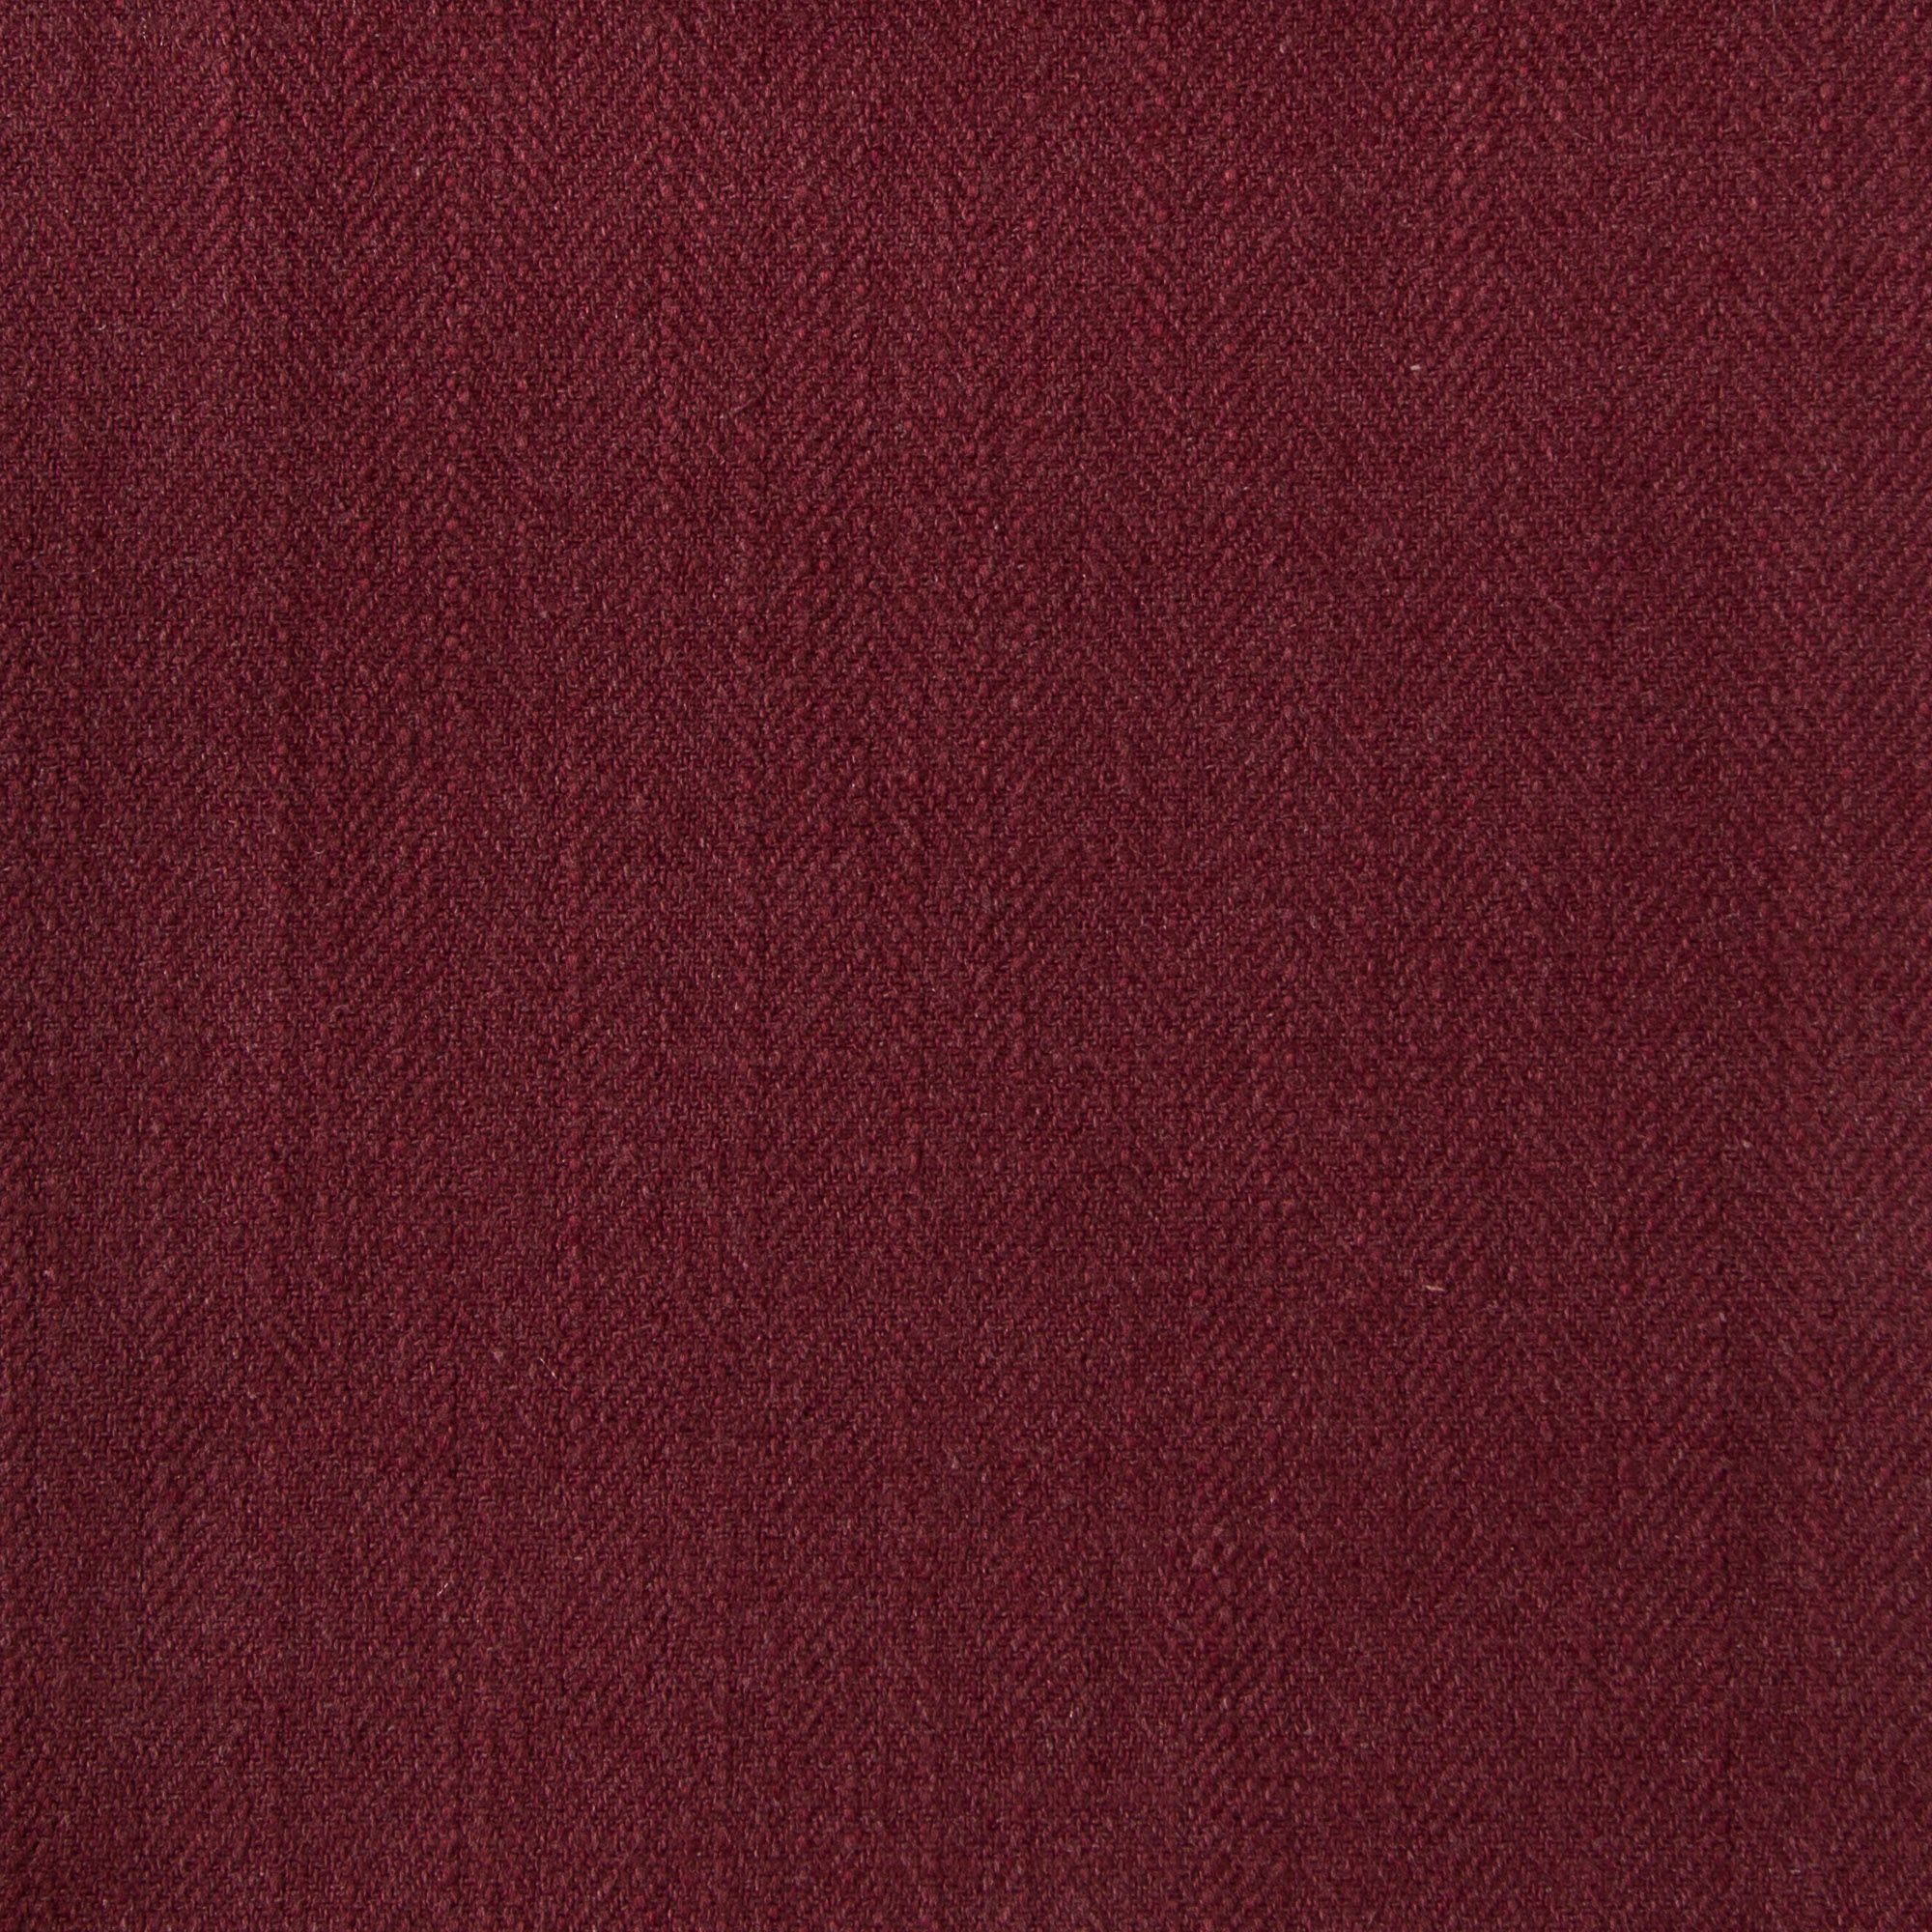 Gir Merlot Cotton Linen Blend  Fabric Swatch 6" x 6"